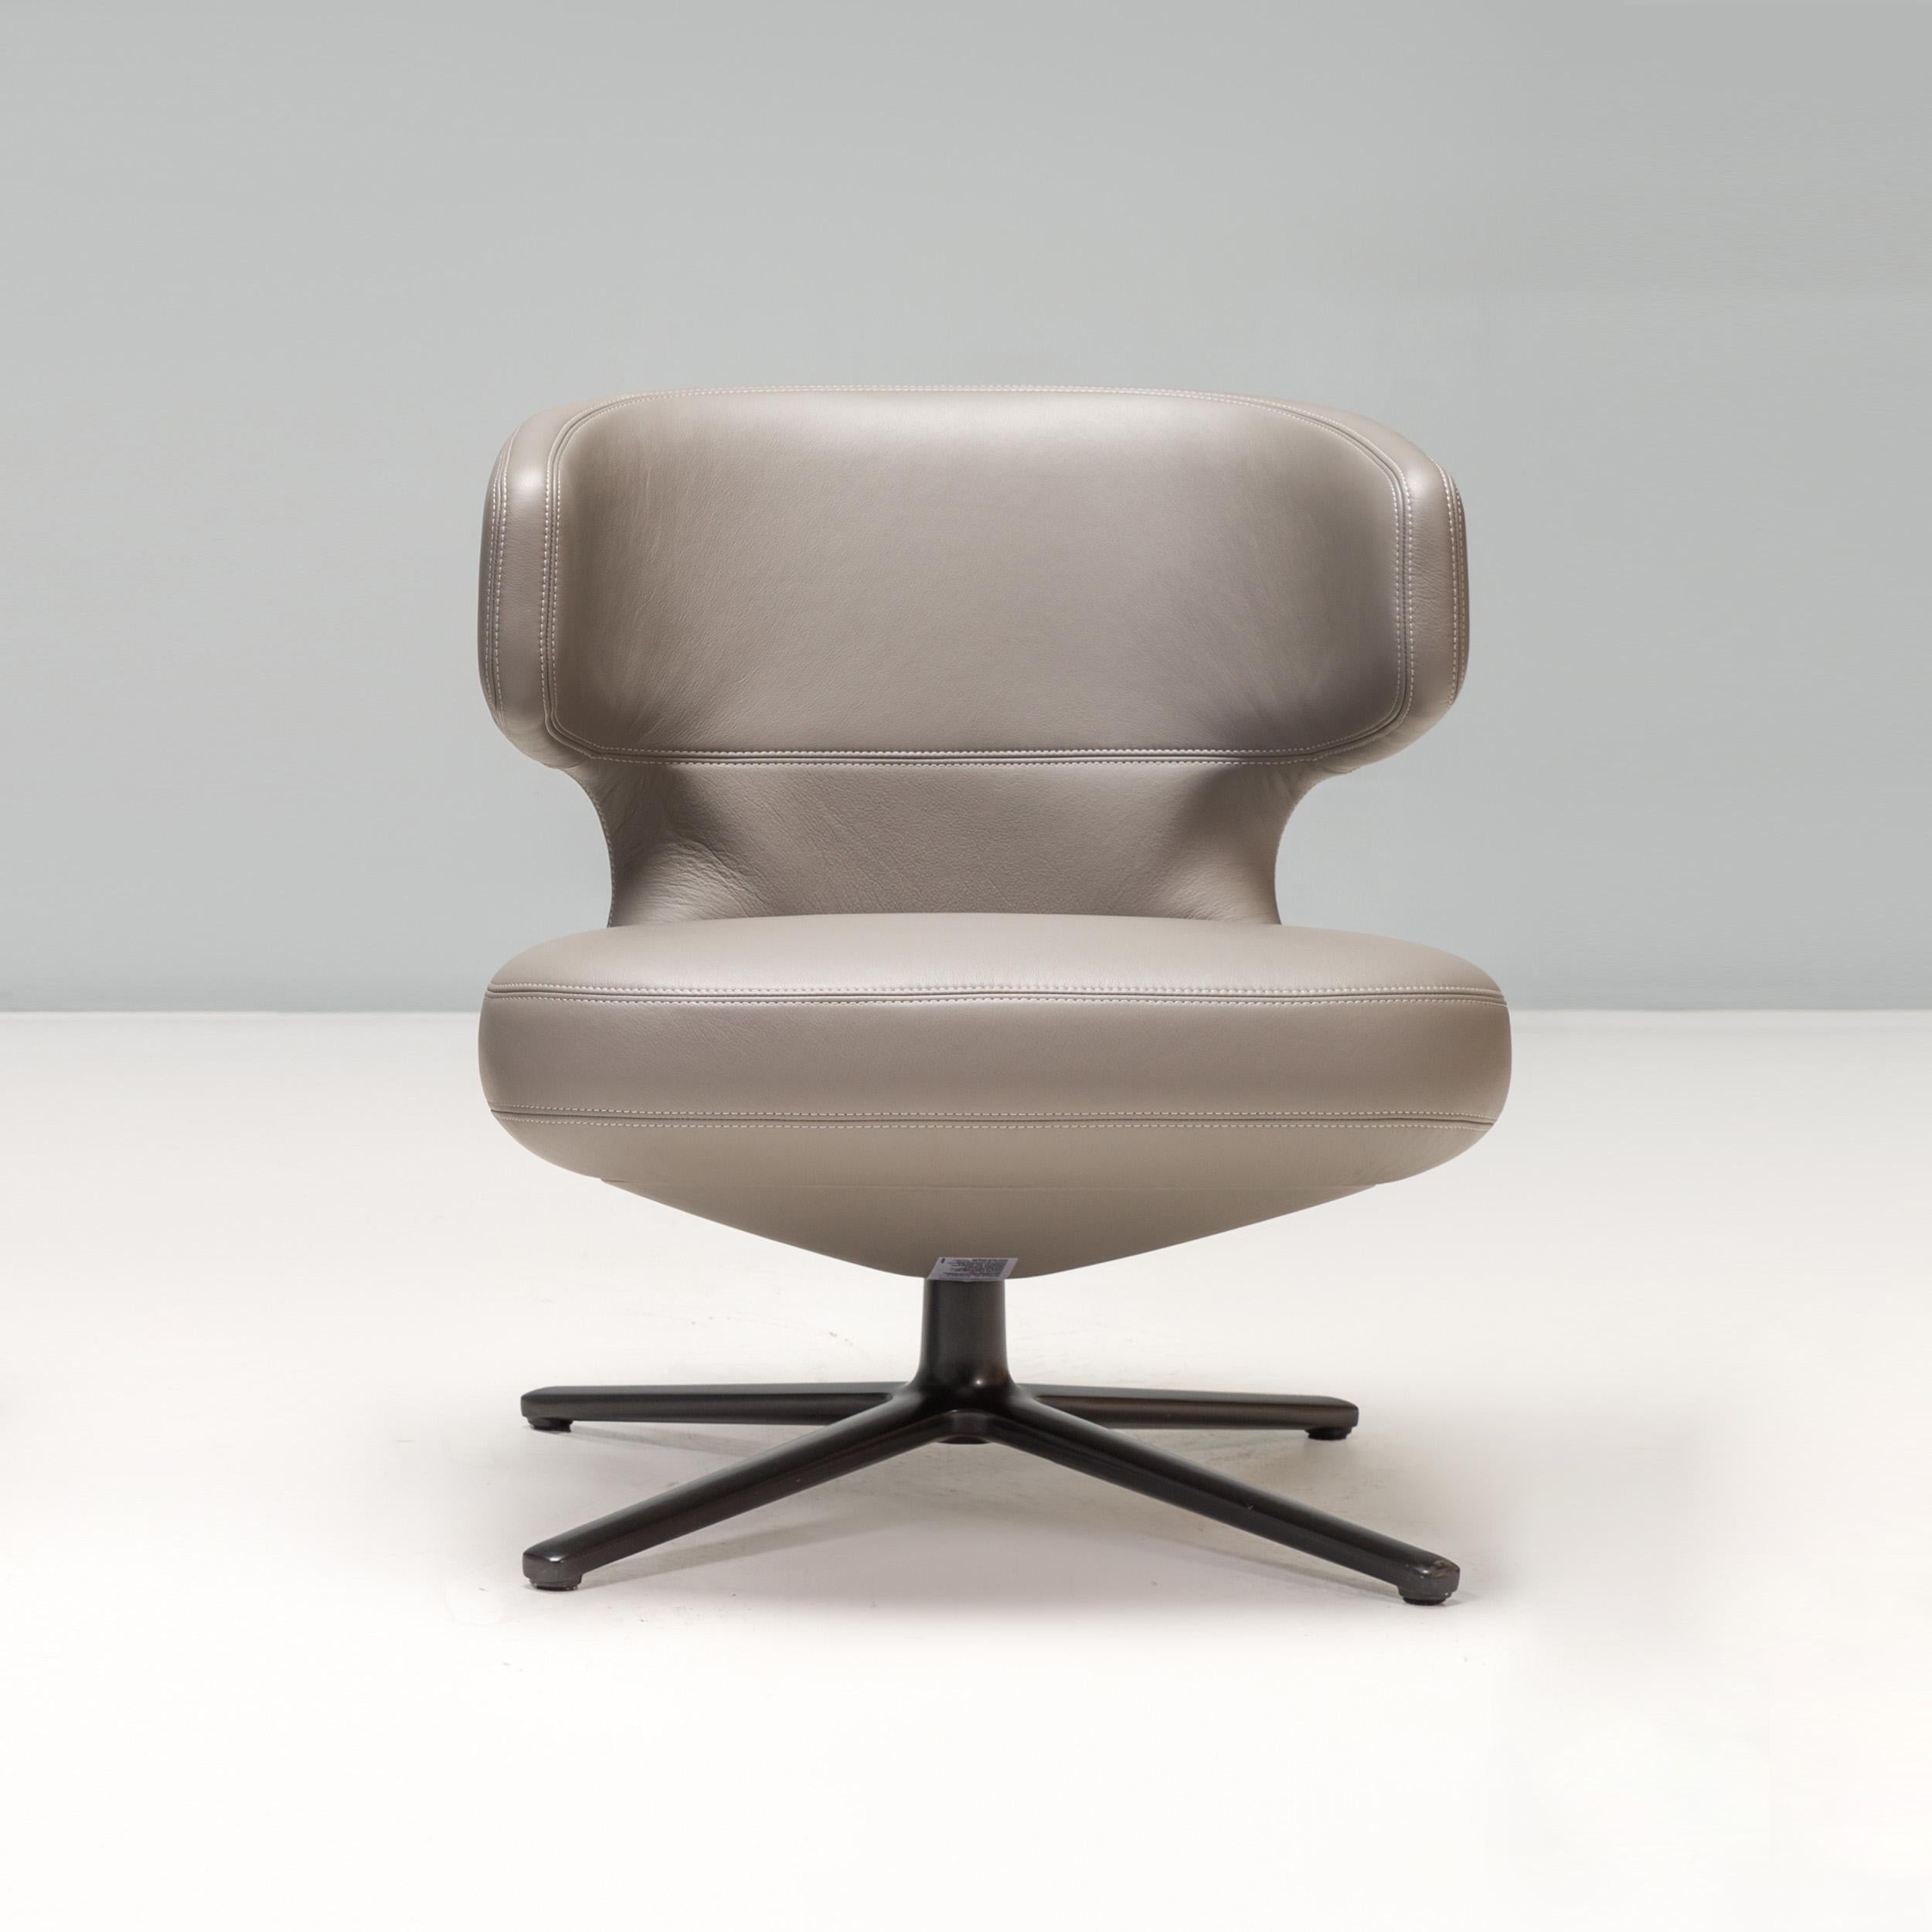 Der von Antonio Citterio entworfene Stuhl Petit Repos wurde 2013 in die Vitra Collection'S aufgenommen.

Der Stuhl bietet den gleichen ultimativen Komfort wie die größeren Repos-Modelle, aber in einer kompakteren Form. 

Der mit grauem Leder